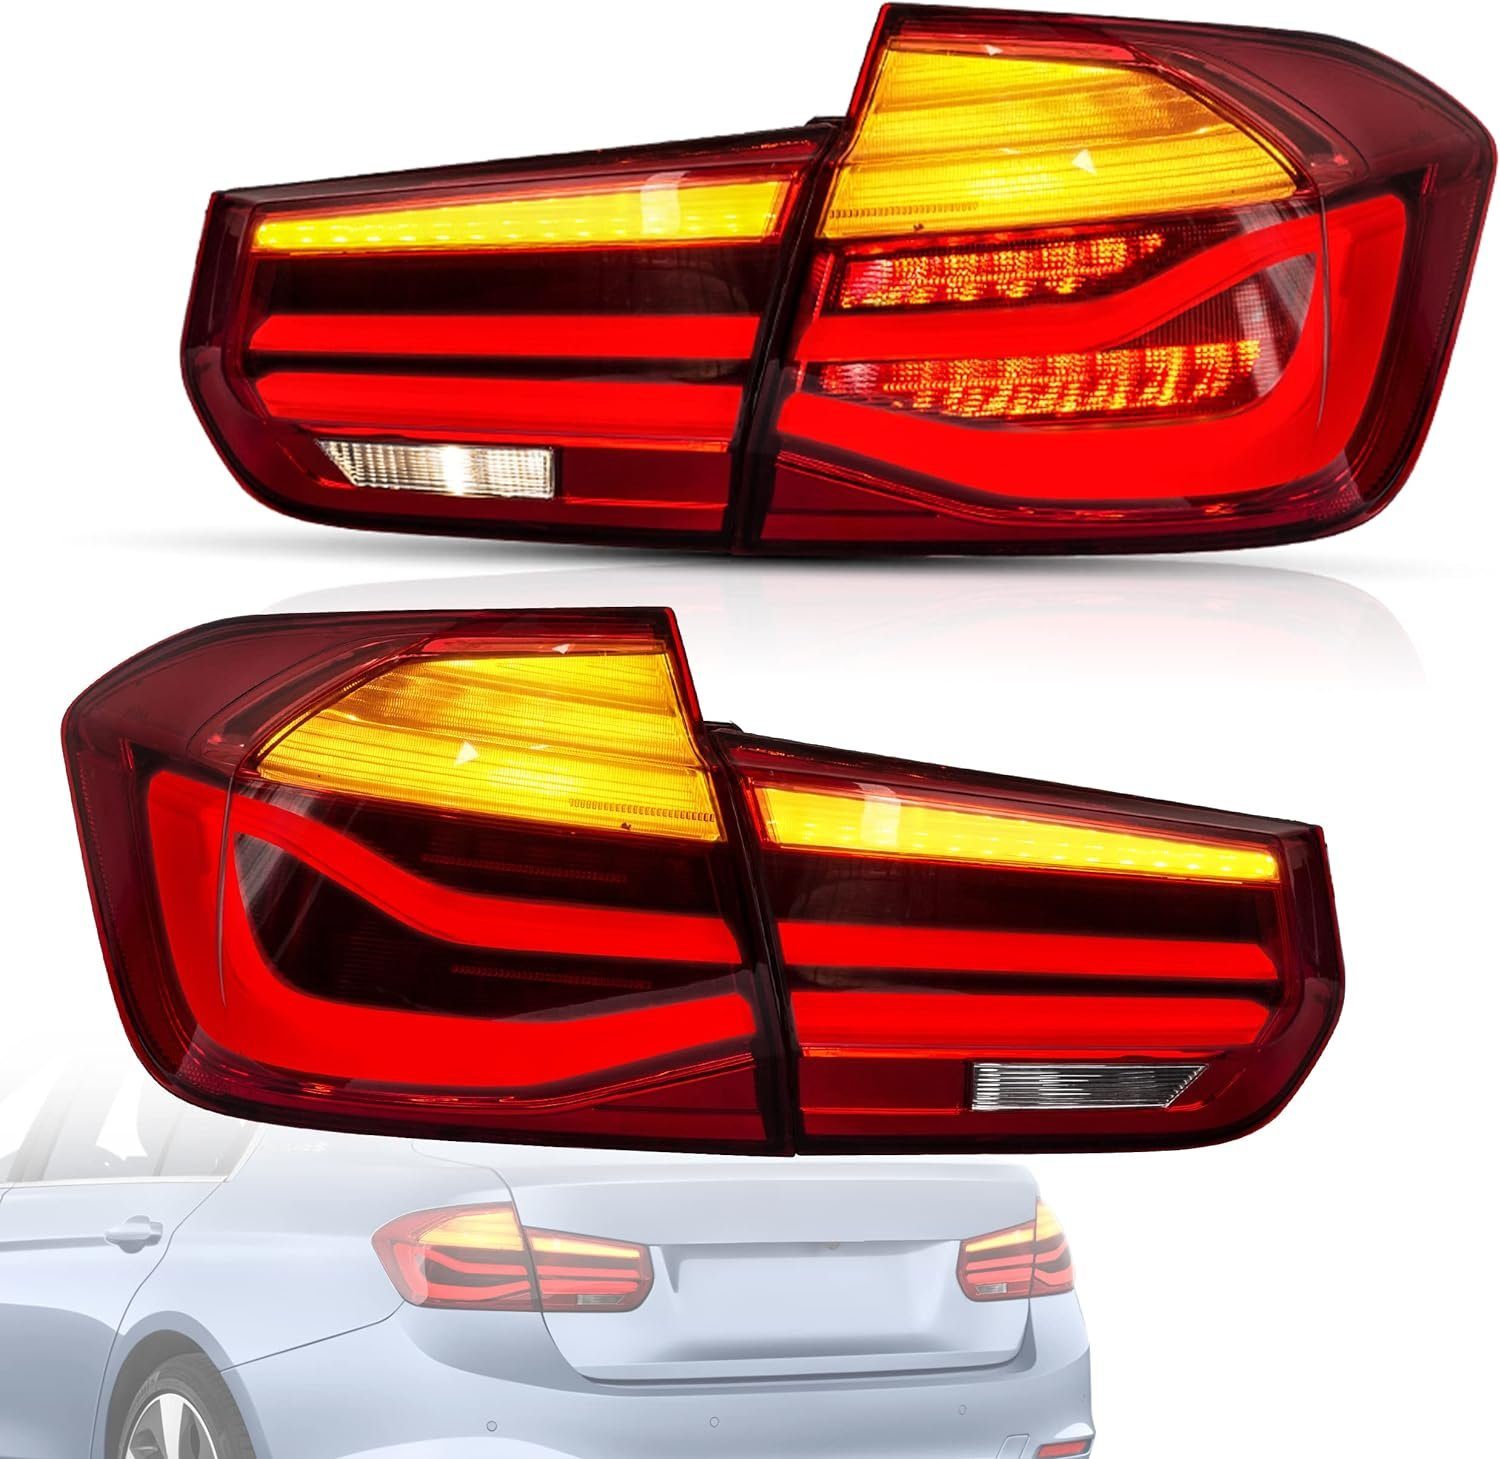 LLCTOOLS Rückleuchte Hell leuchtende LED Rückleuchte mit E-Prüfzeichen passend für BMW, Rücklicht, Bremslicht, Blinklicht und Rückfahrlicht, LED fest integriert, Voll LED, Dynamischer Blinker, Hochwertiges LED Rücklicht Auto mit Bremsfunktion